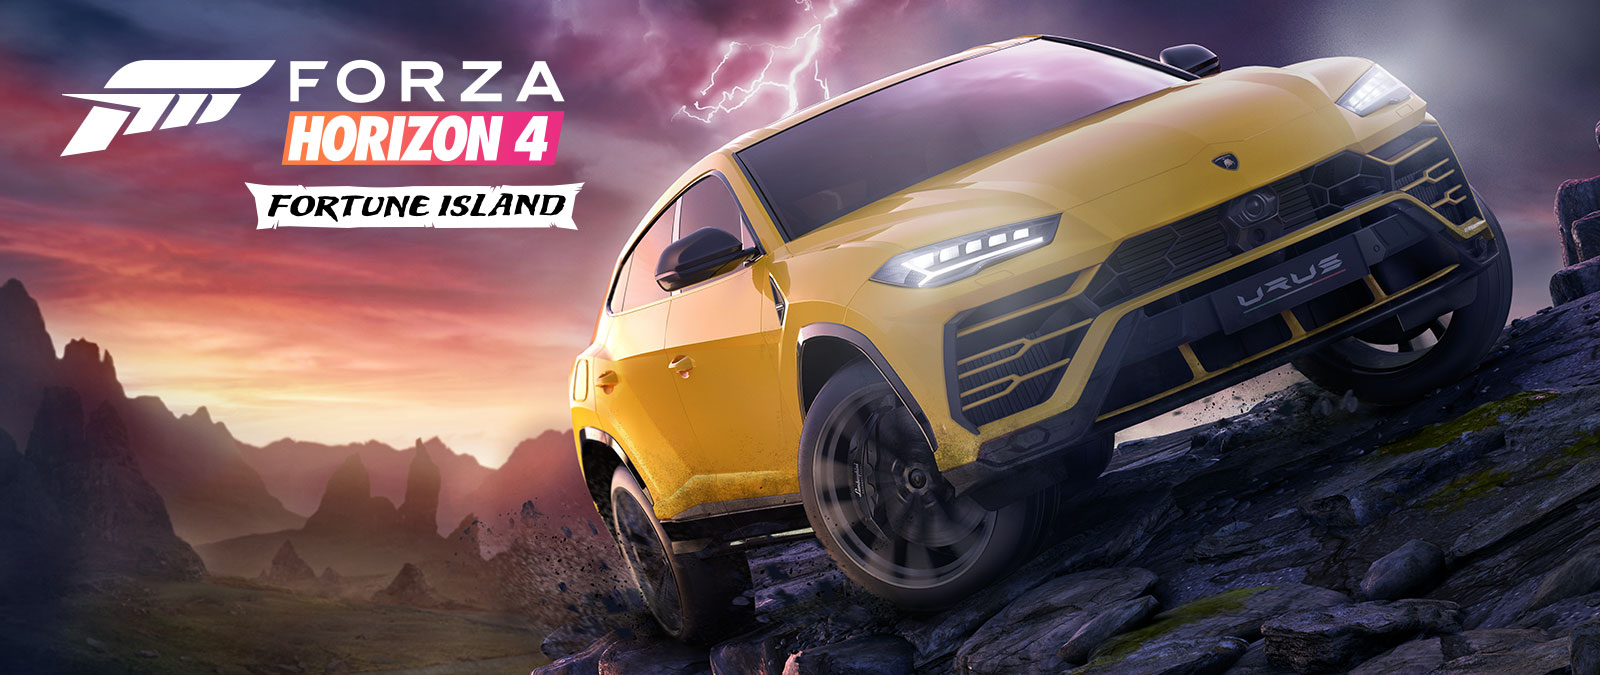 Forza Horizon 4 Fortune Island, žlté Lamborghini Urus jazdí po zradnom teréne s bleskom v pozadí